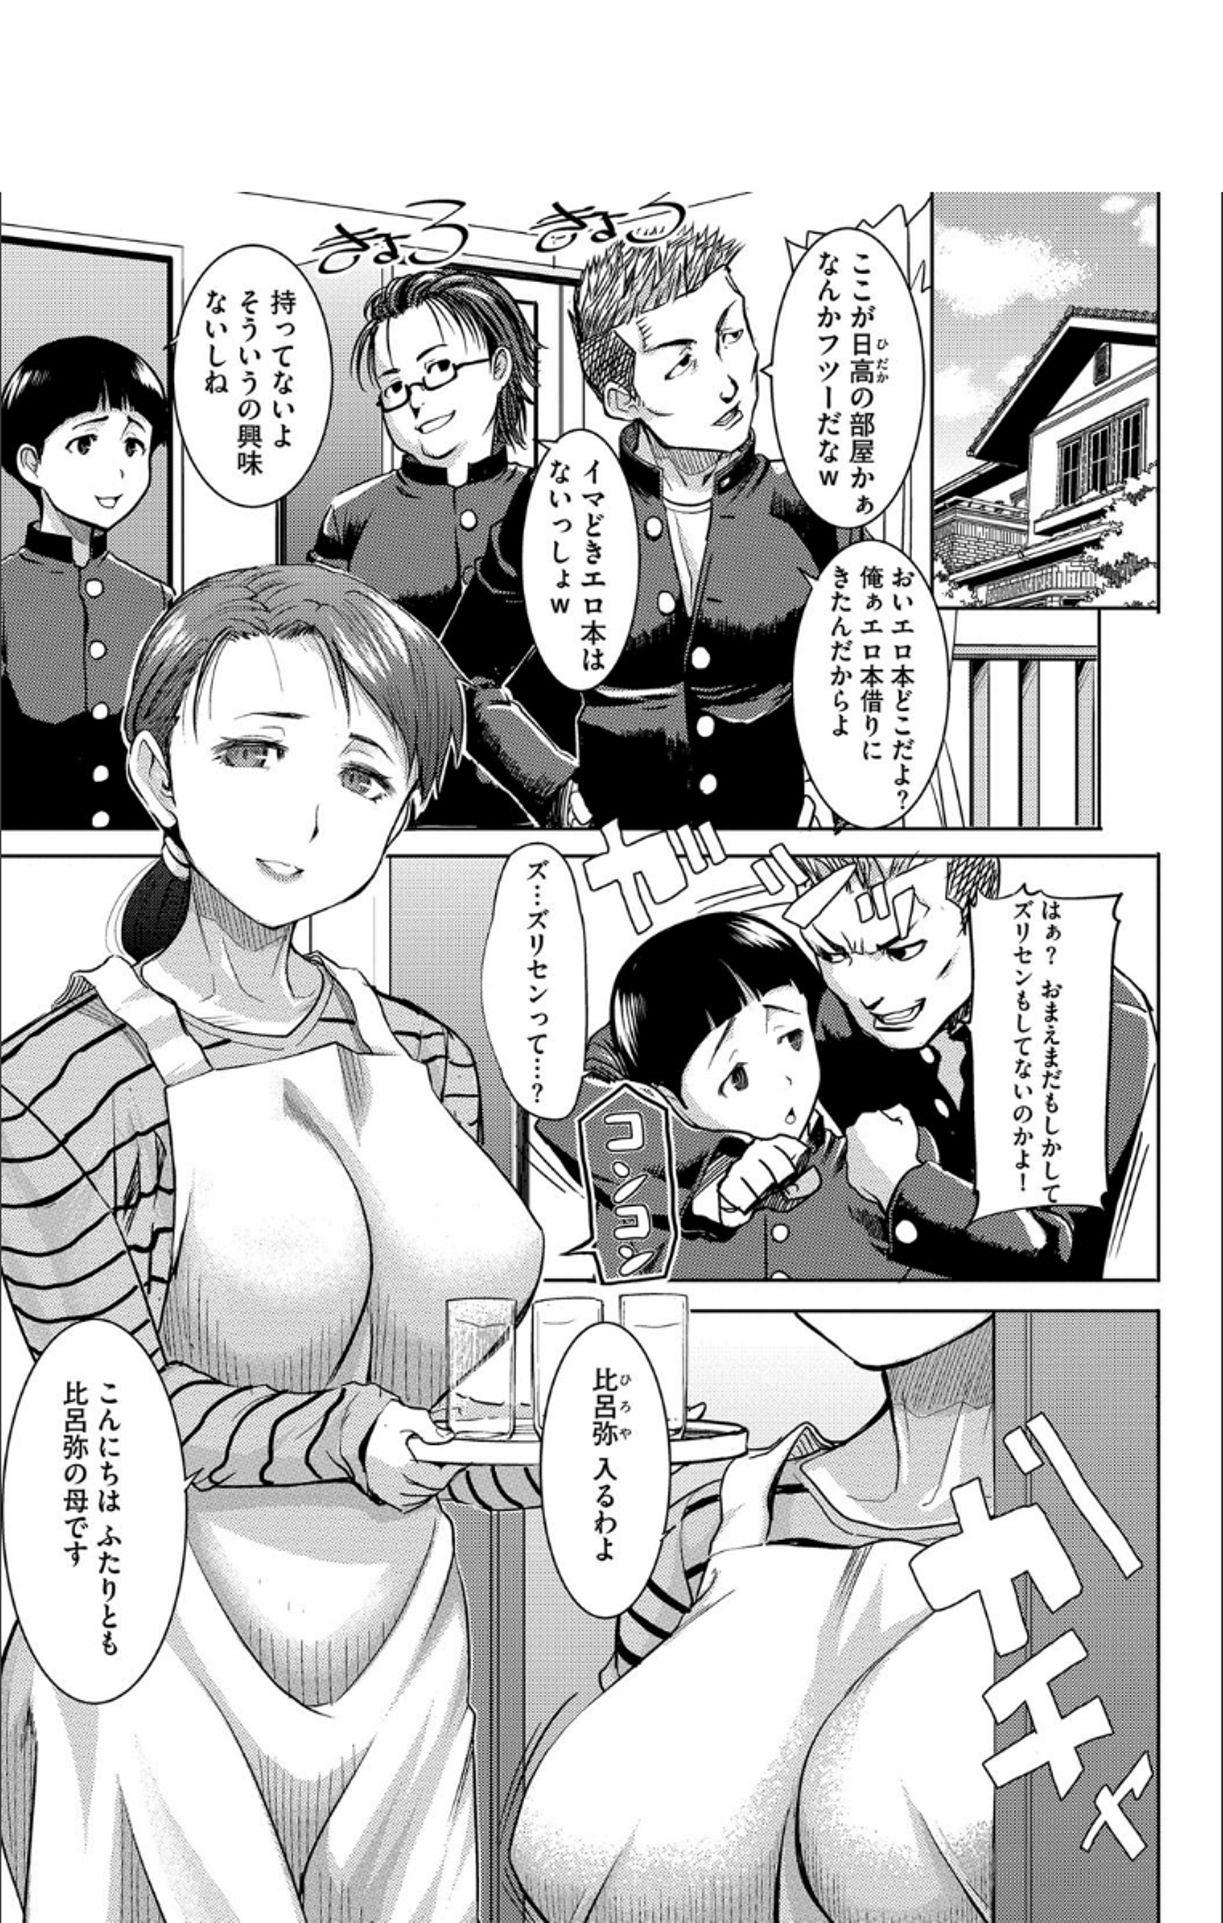 Cuckolding Boku no Kazoku o Sarashimasu + DMM Gentei Tokuten Paper Girl Gets Fucked - Page 6